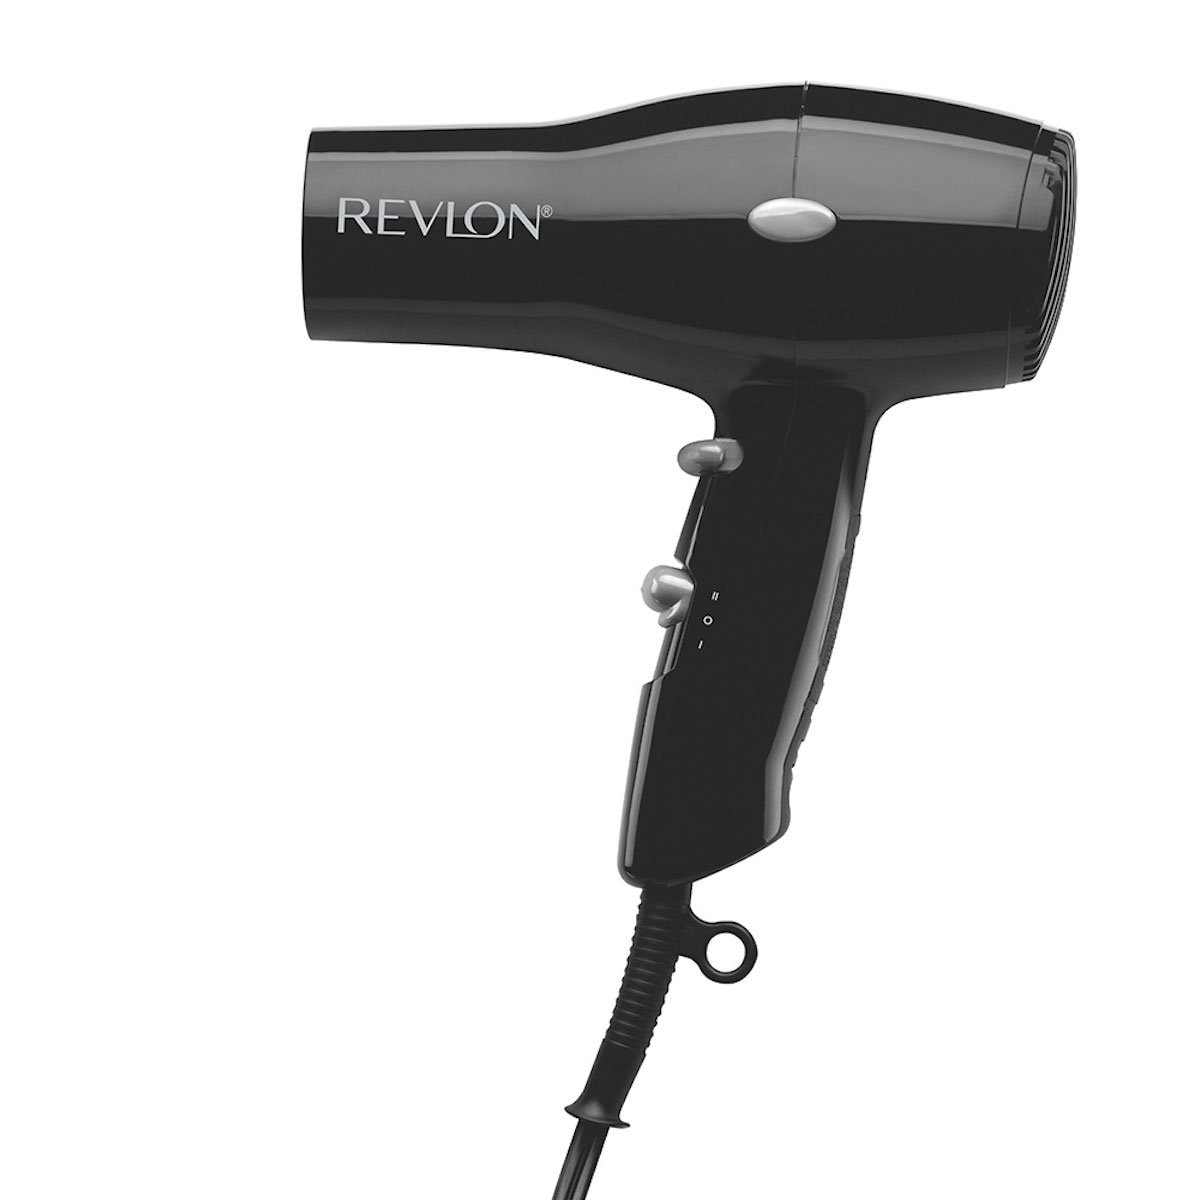 Revlon Essentials Secadora Compacta Ultraligera 1875W